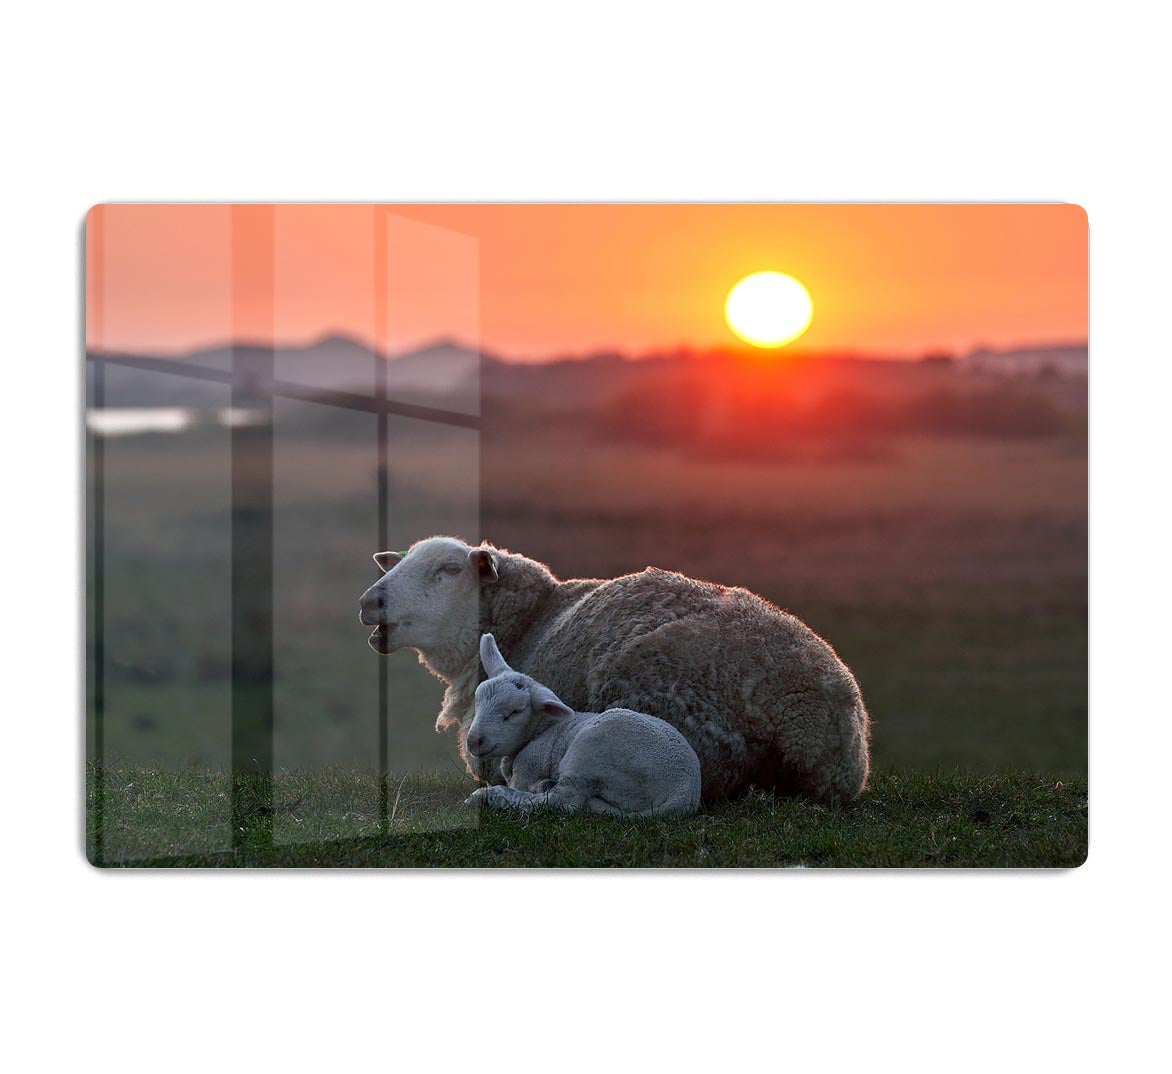 Sleep well Sheep HD Metal Print - Canvas Art Rocks - 1